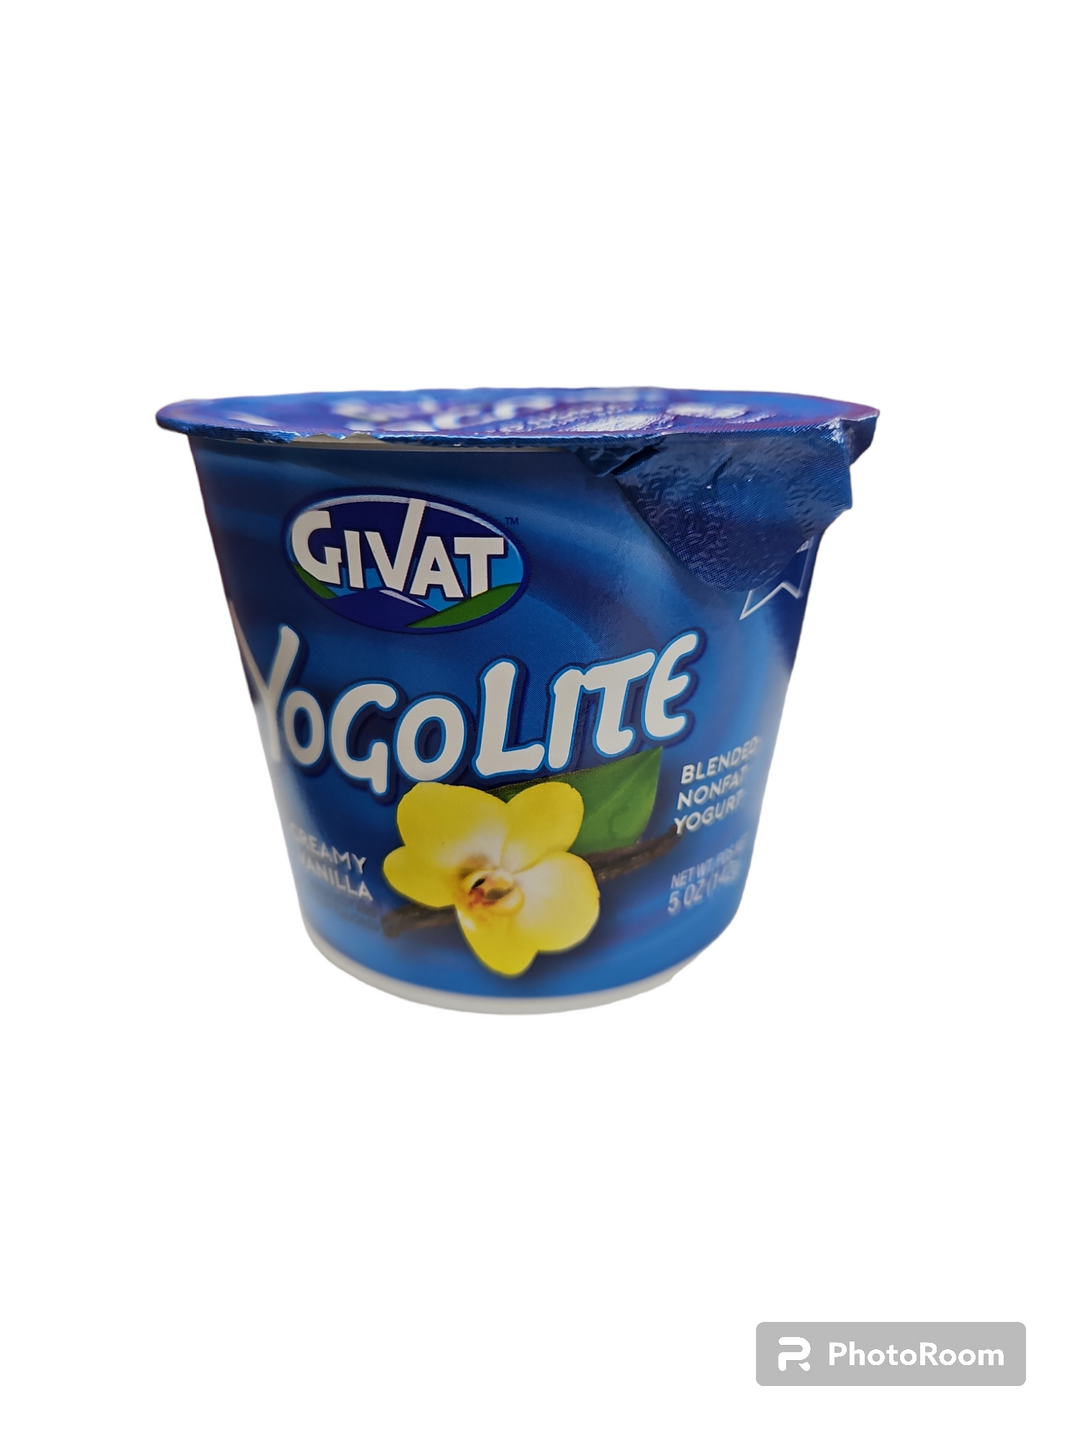 Givat, YogoLite Nonfat Creamy Vanilla Yogurt 5 Oz